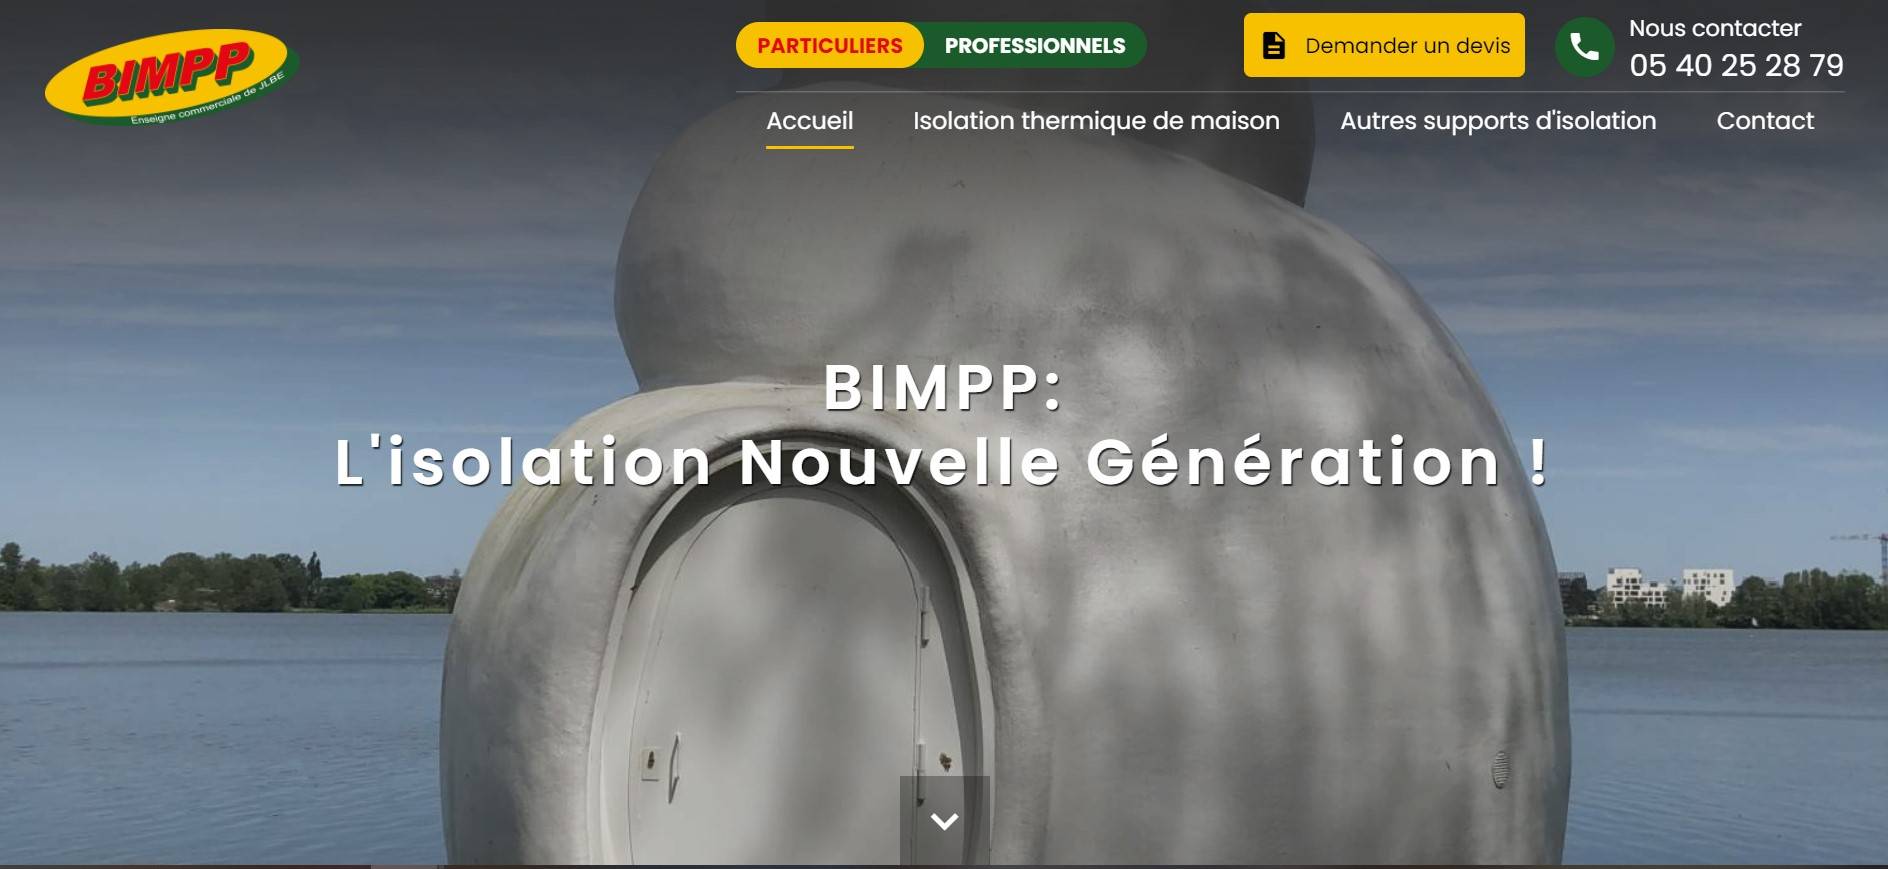 Quelle entreprise pour l'isolation de maison par mousse projetée à Bordeaux ? - BIMPP